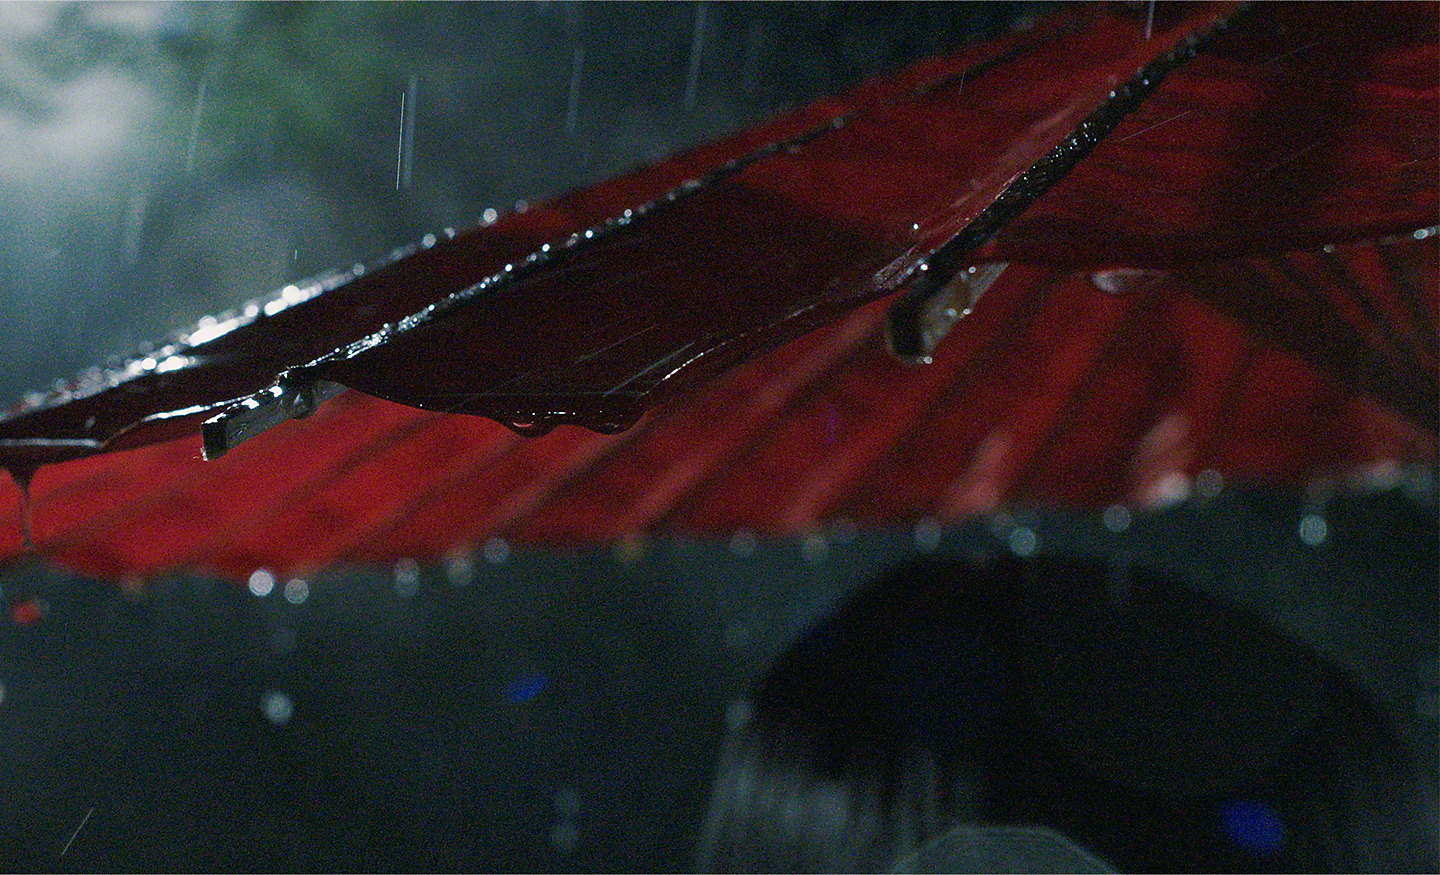 Ploaie căzând pe o umbrelă de soare roșie